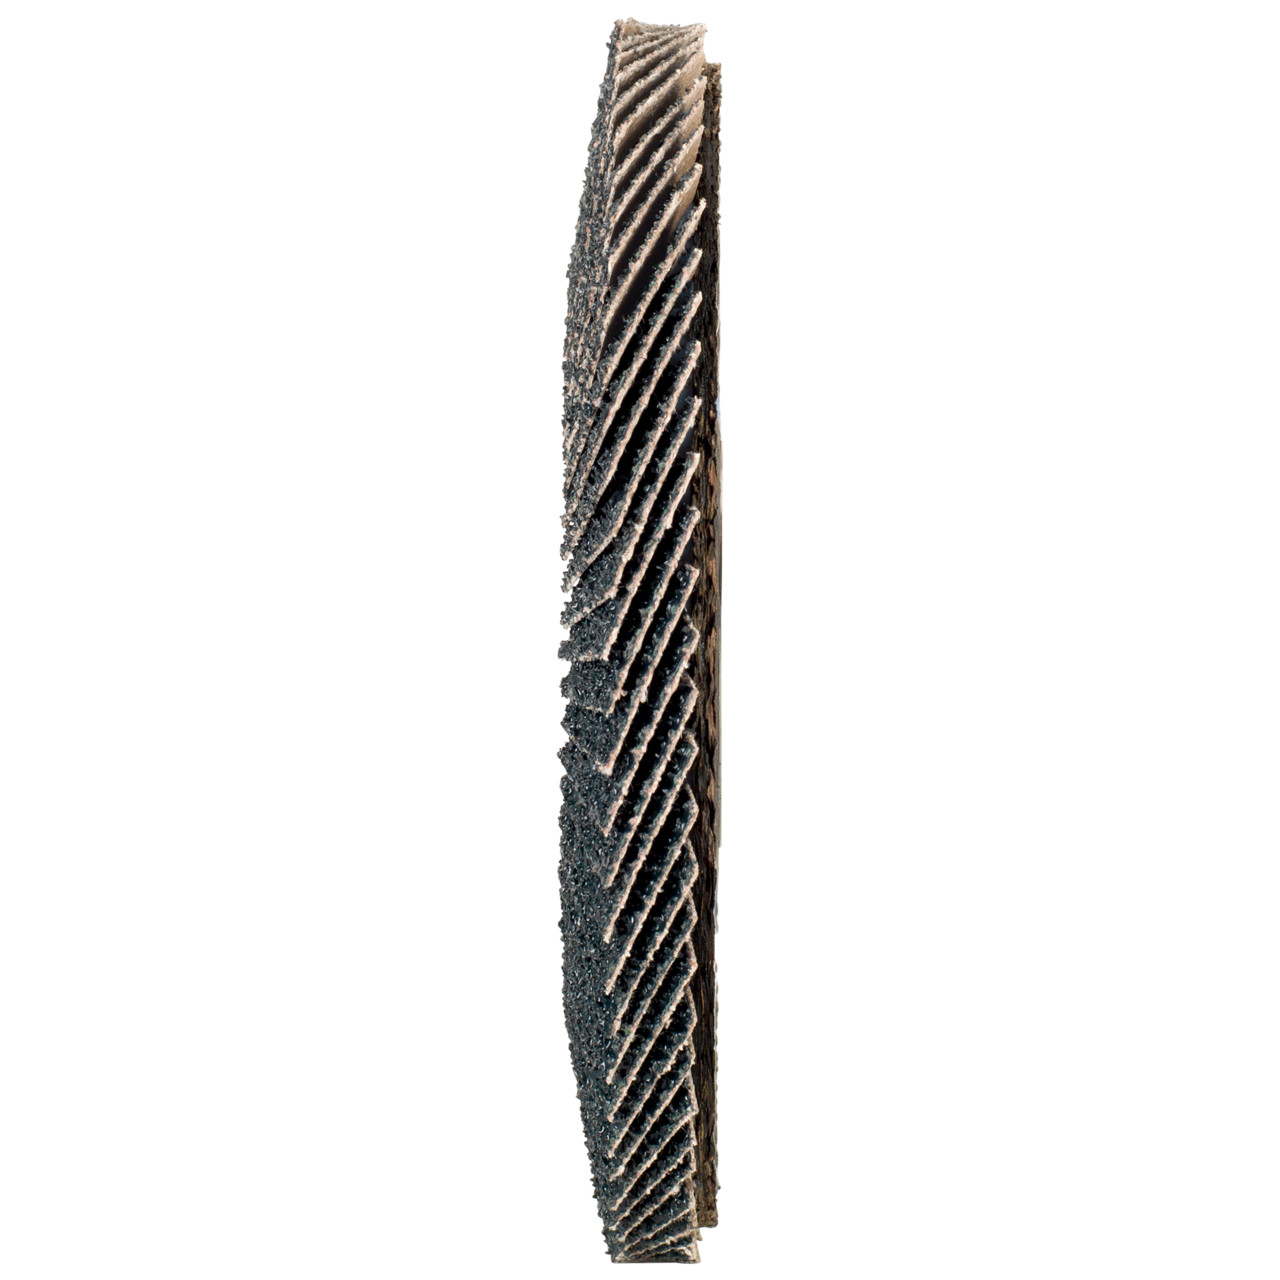 TYROLIT Fächerscheibe DxH 150x22,2 2in1 für Stahl & Edelstahl, P120, Form: 27A - gekröpfte Ausführung (Glasfaserträgerkörperausführung), Art. 519215